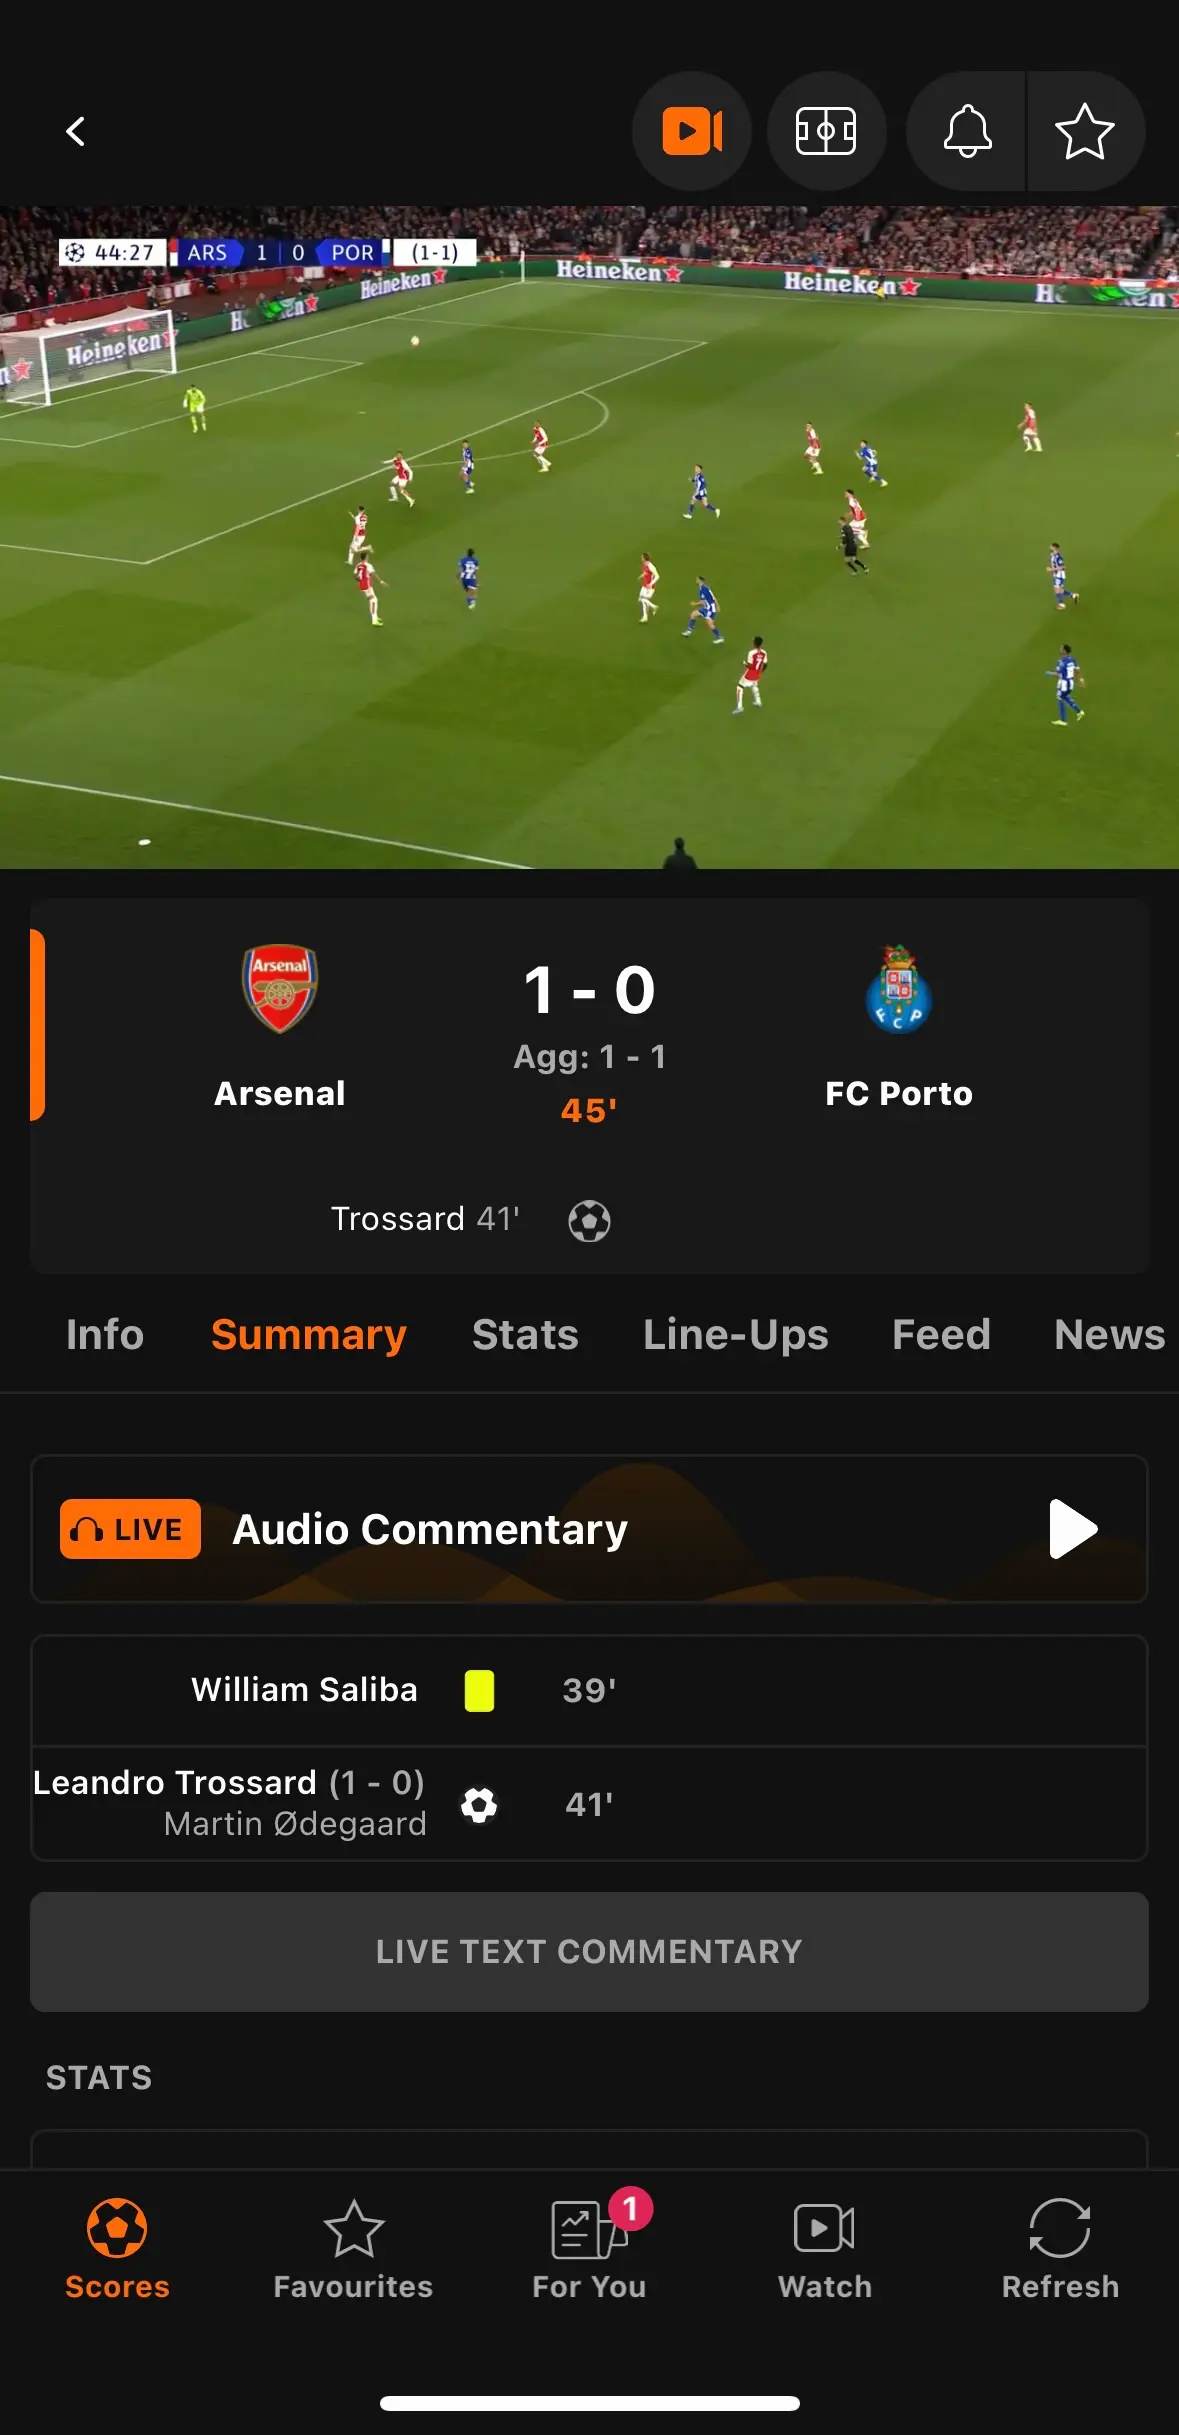 Viendo la retransmisión del Arsenal vs. Porto de la Champions a través de la aplicación iOS irlandesa de LiveScore.